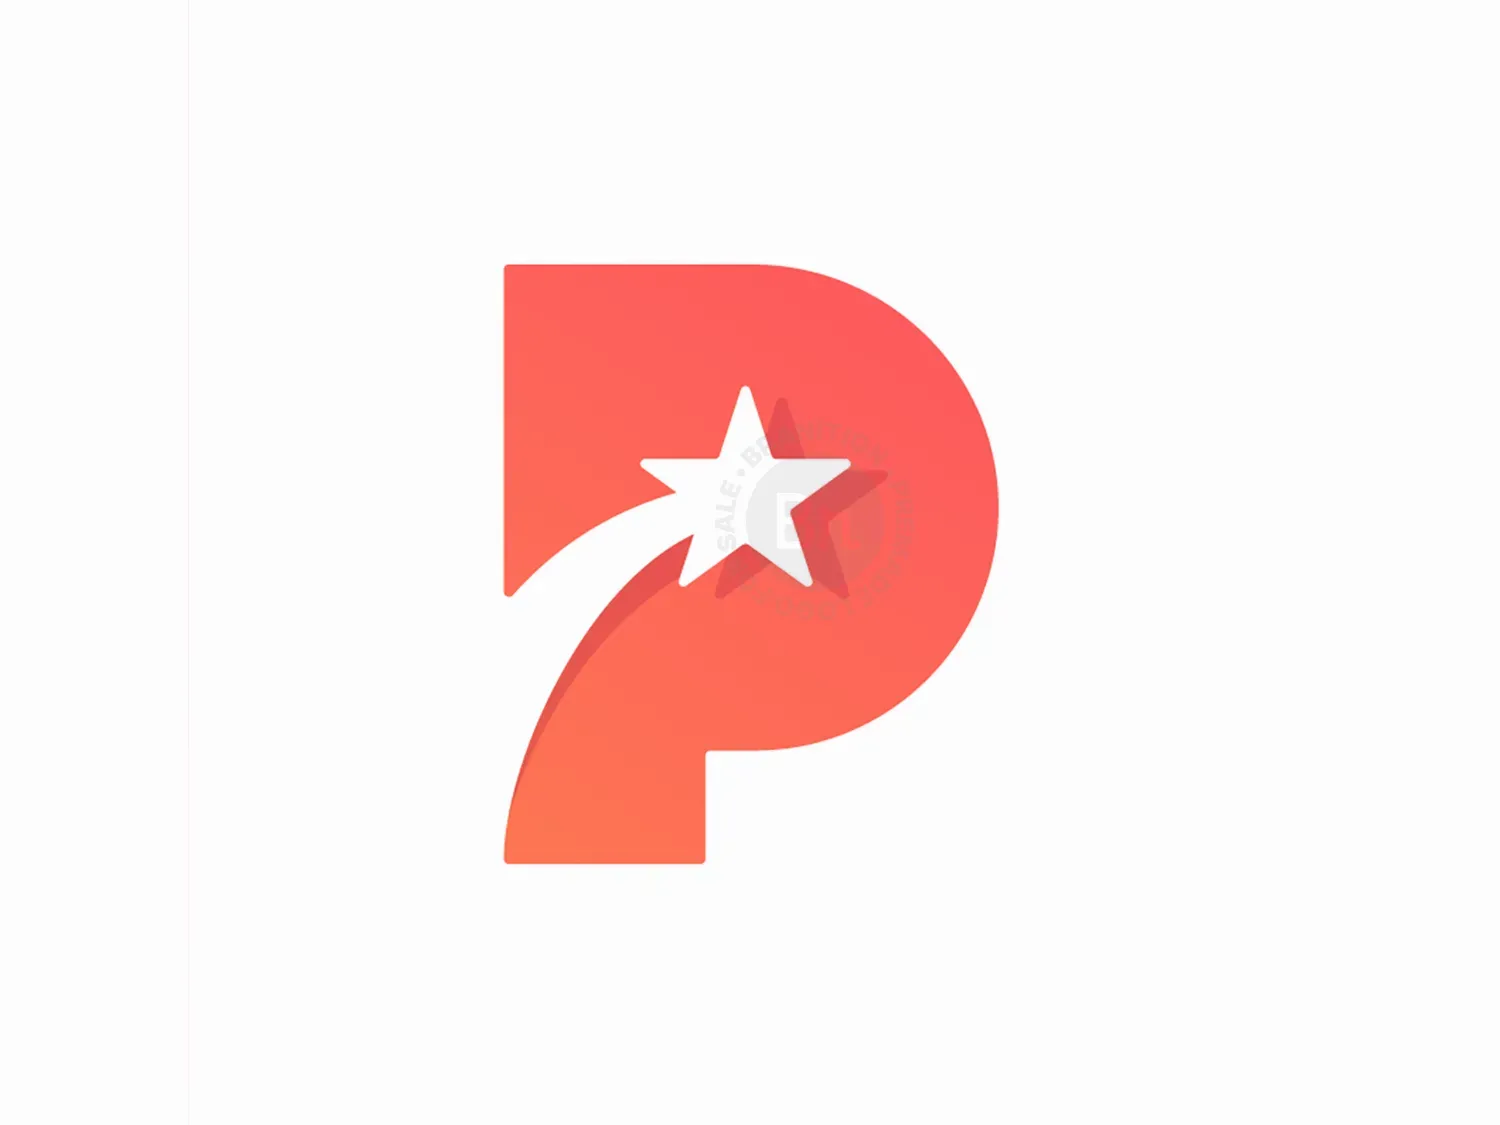 P + Star, Letter Mark Negative Space Logo Design Symbol Icon